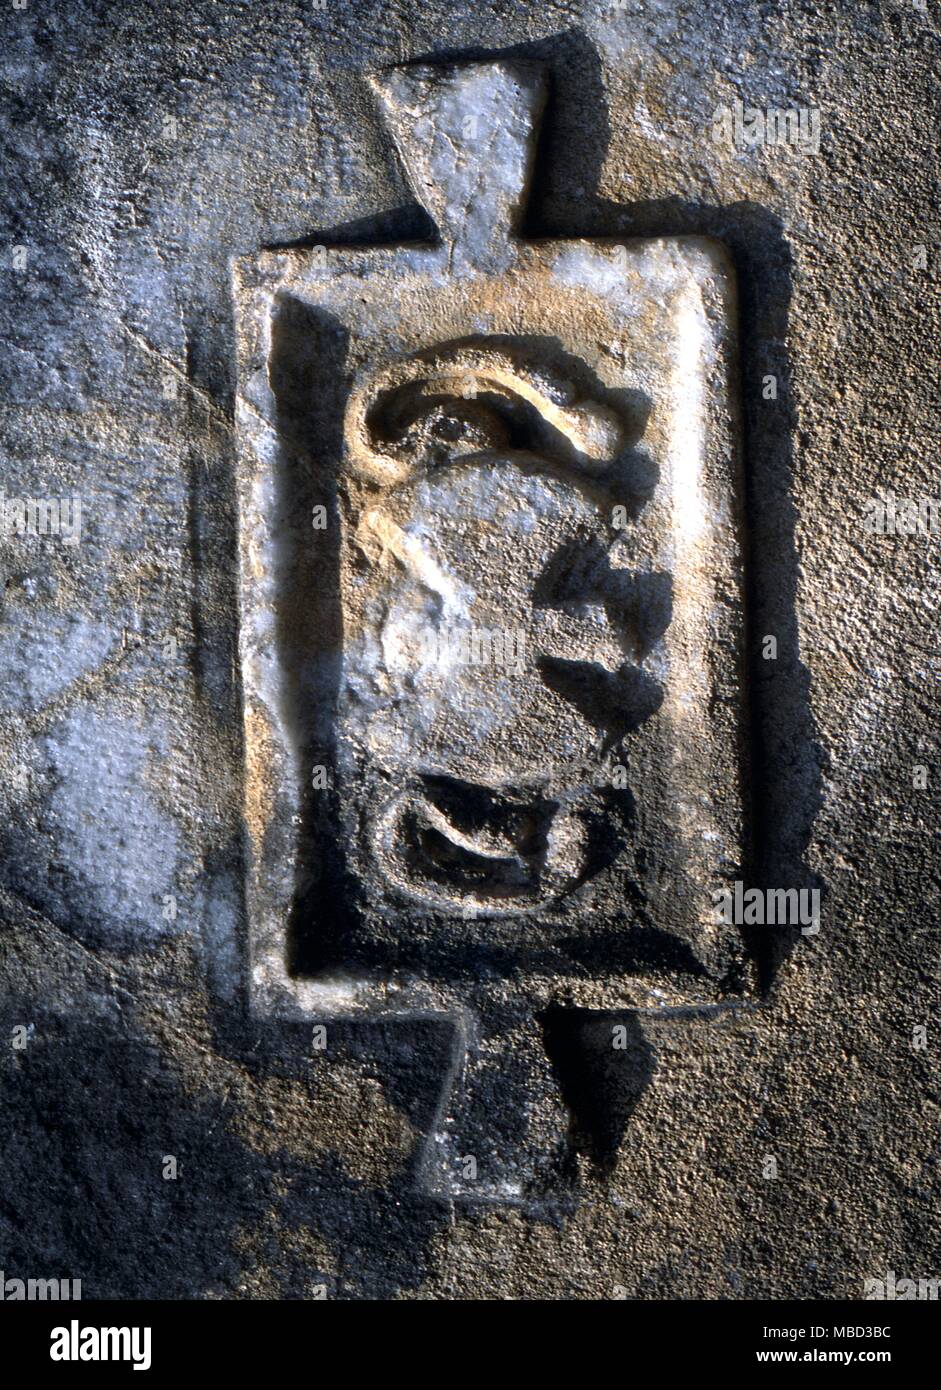 Symboles -Double HACHE Hache Double d'origine crétoise, avec l'oreille humaine. Symbole ésotérique sculptés sur le mur du Temple Grec à Euromos, Turquie Banque D'Images